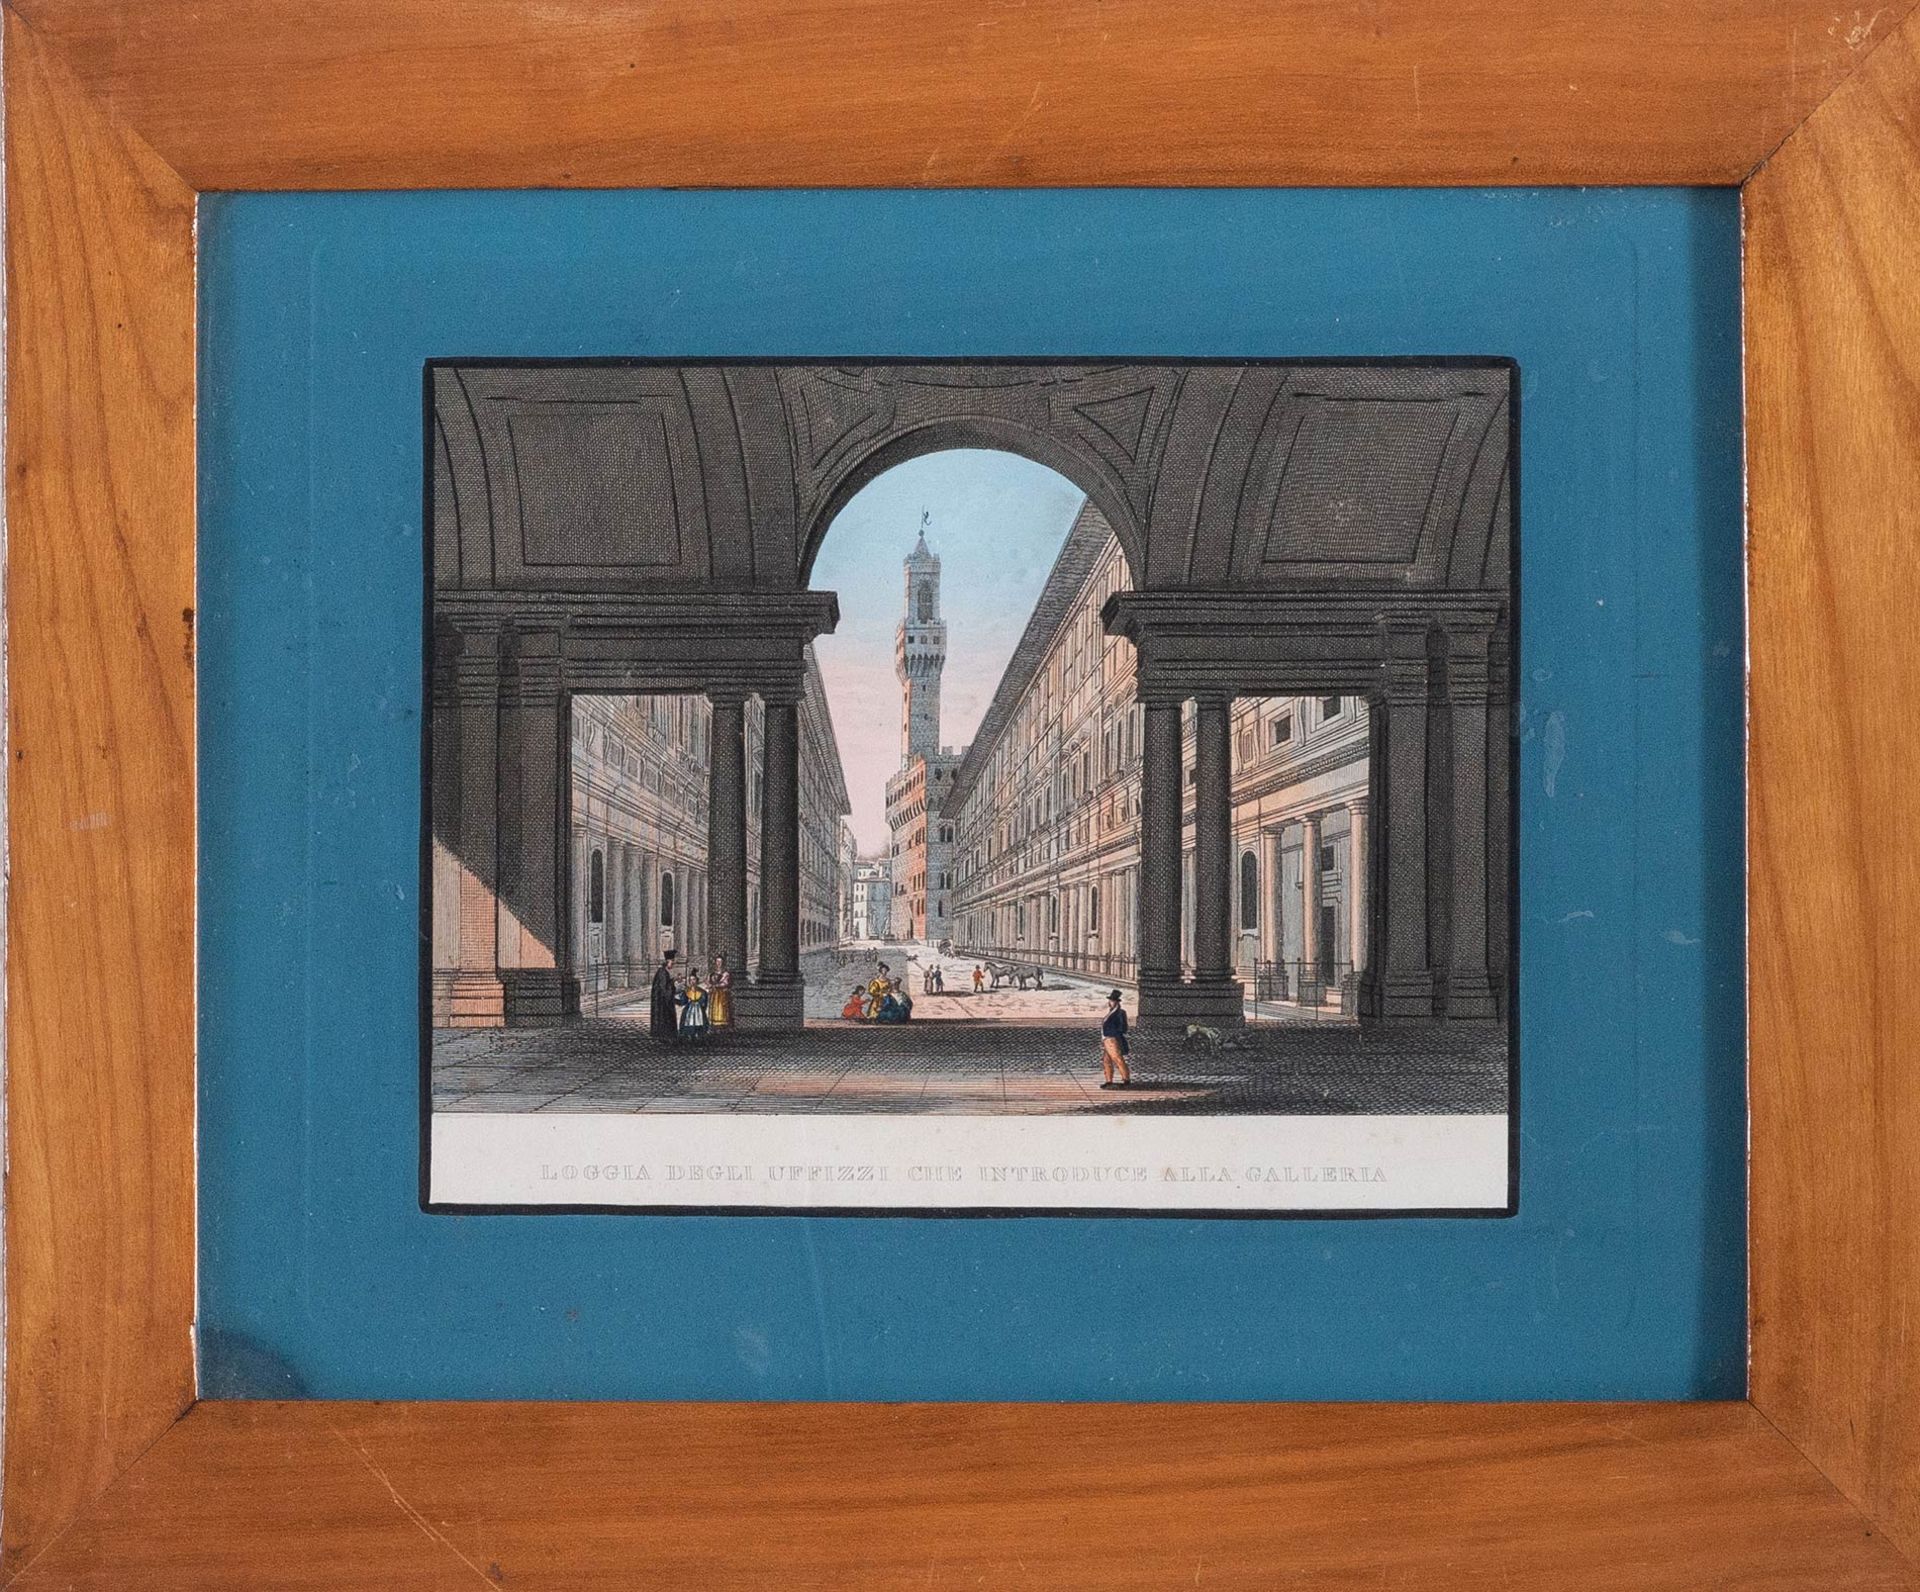 Artista dell’inizio del XIX sec., “Loggia degli Uffizi che introduce alla Galleria”.